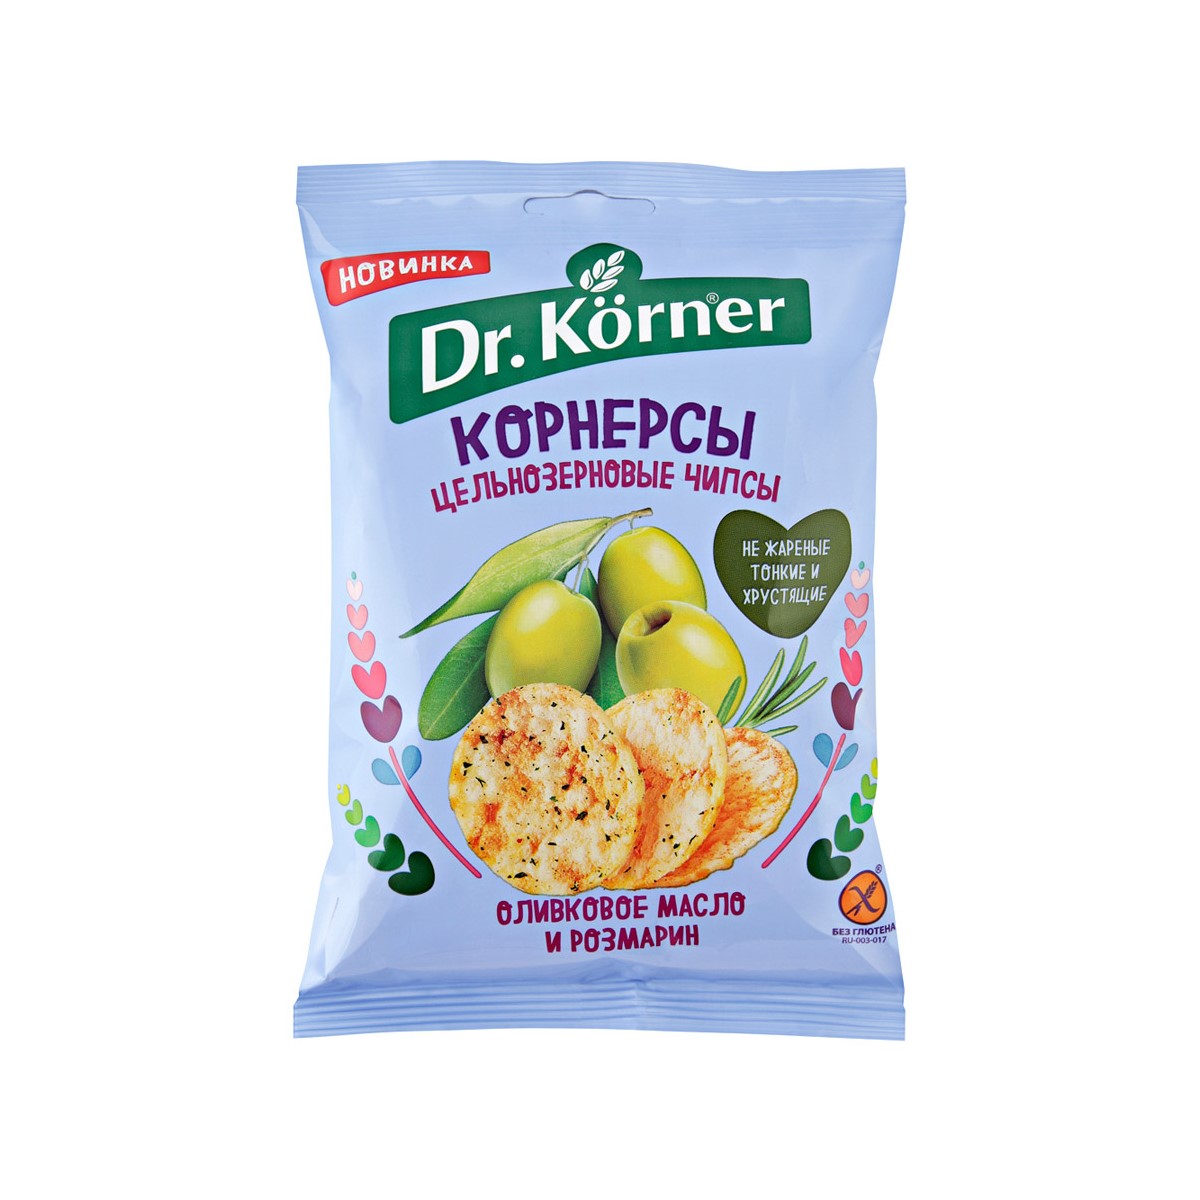 Чипсы Dr. Korner цельнозерновые кукурузно-рисовые с оливковым маслом и розмарином 50 г jbl novocrabs корм для панцирных ракообразных чипсы 250 мл